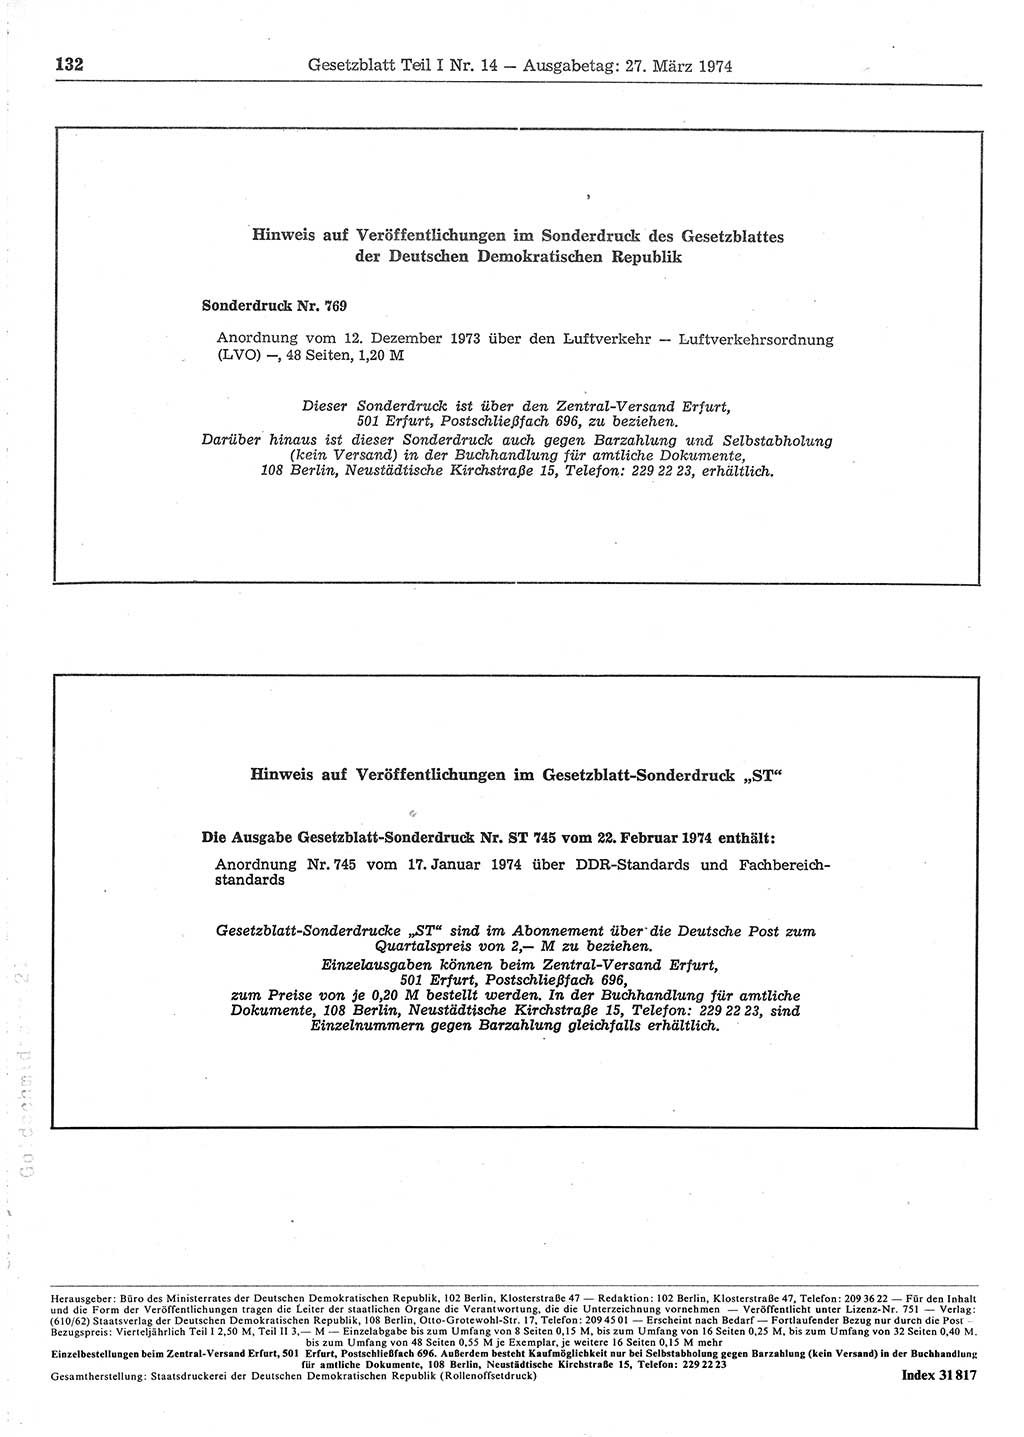 Gesetzblatt (GBl.) der Deutschen Demokratischen Republik (DDR) Teil Ⅰ 1974, Seite 132 (GBl. DDR Ⅰ 1974, S. 132)